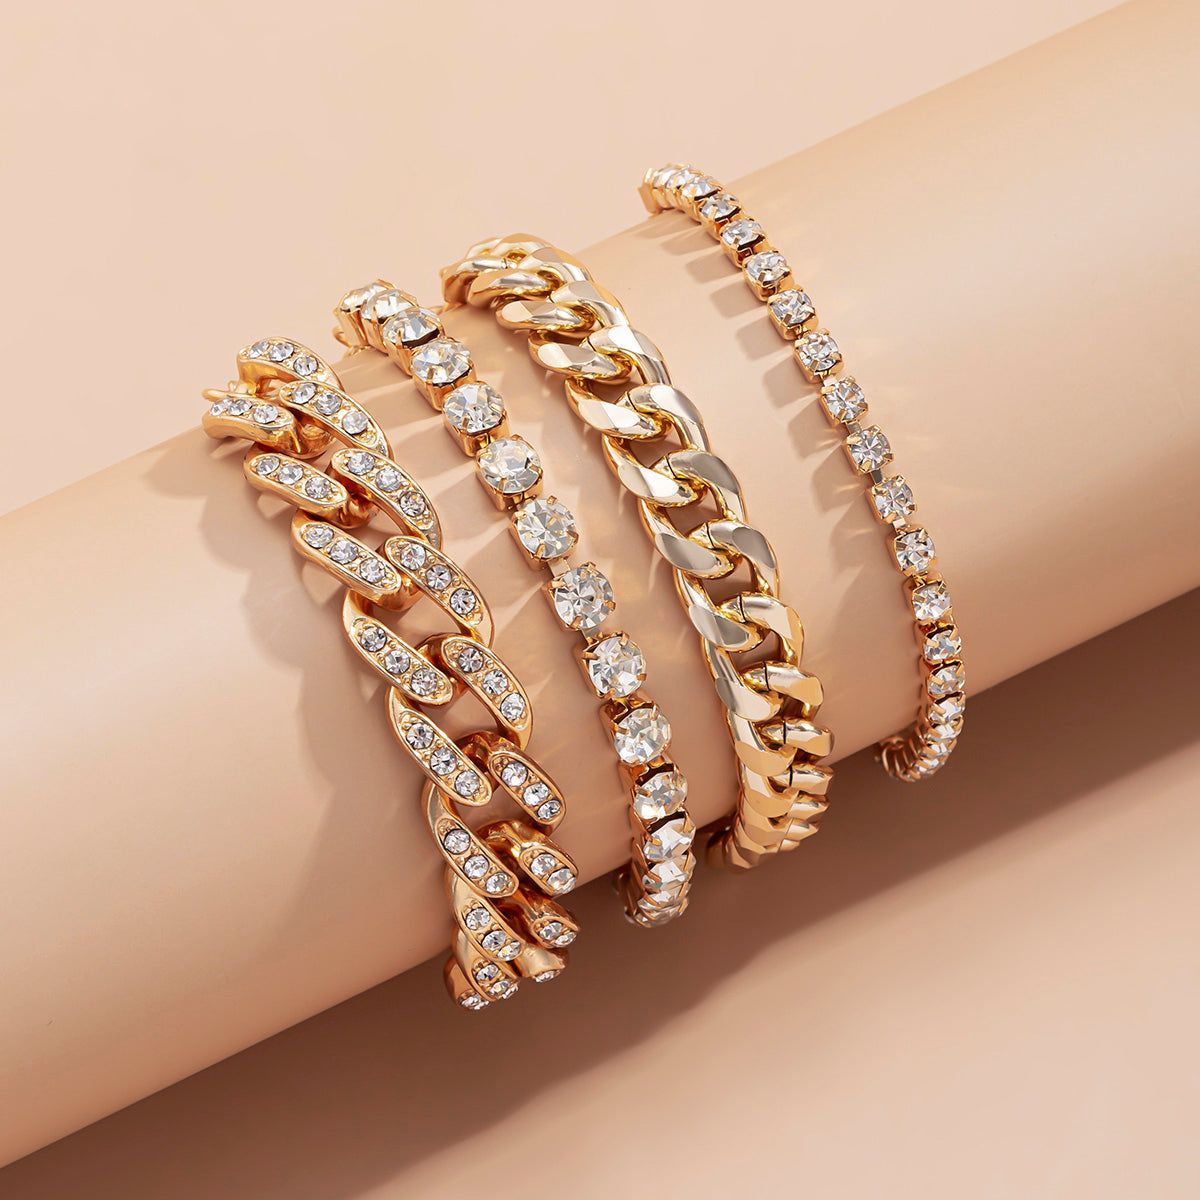 Multilayer Luxury Crystal Rhinestone Bracelet Charm Jewelry SJS0326 - Touchy Style .